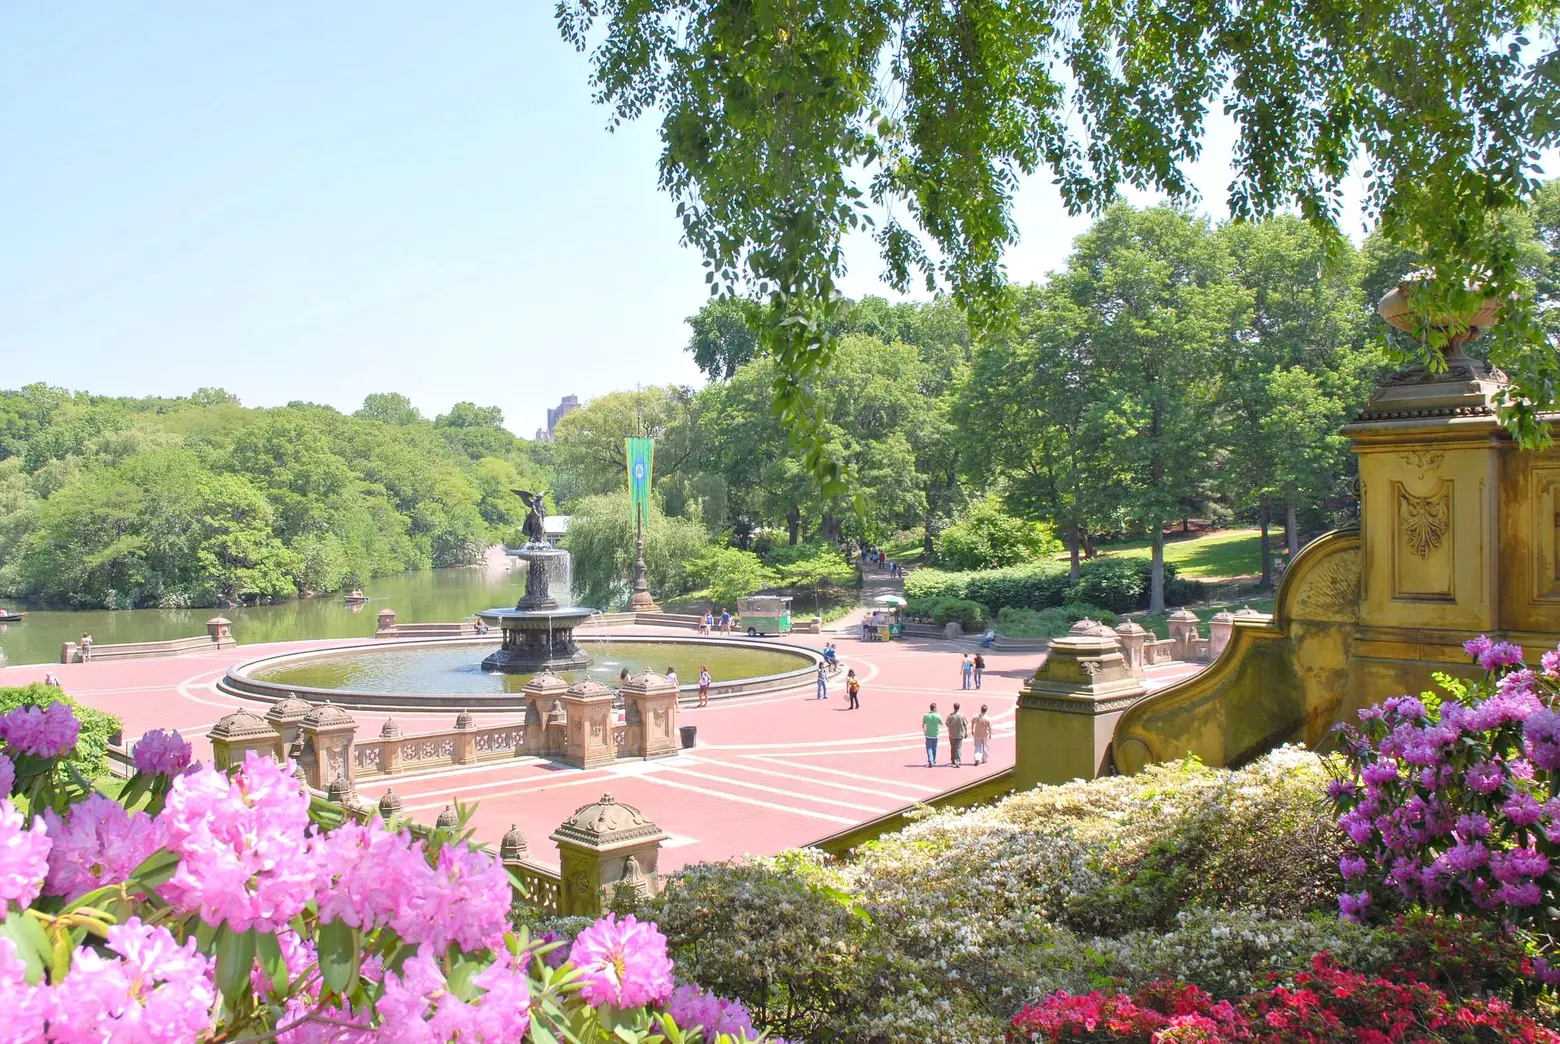 Bethesda Fountain, Central Park Conservancy